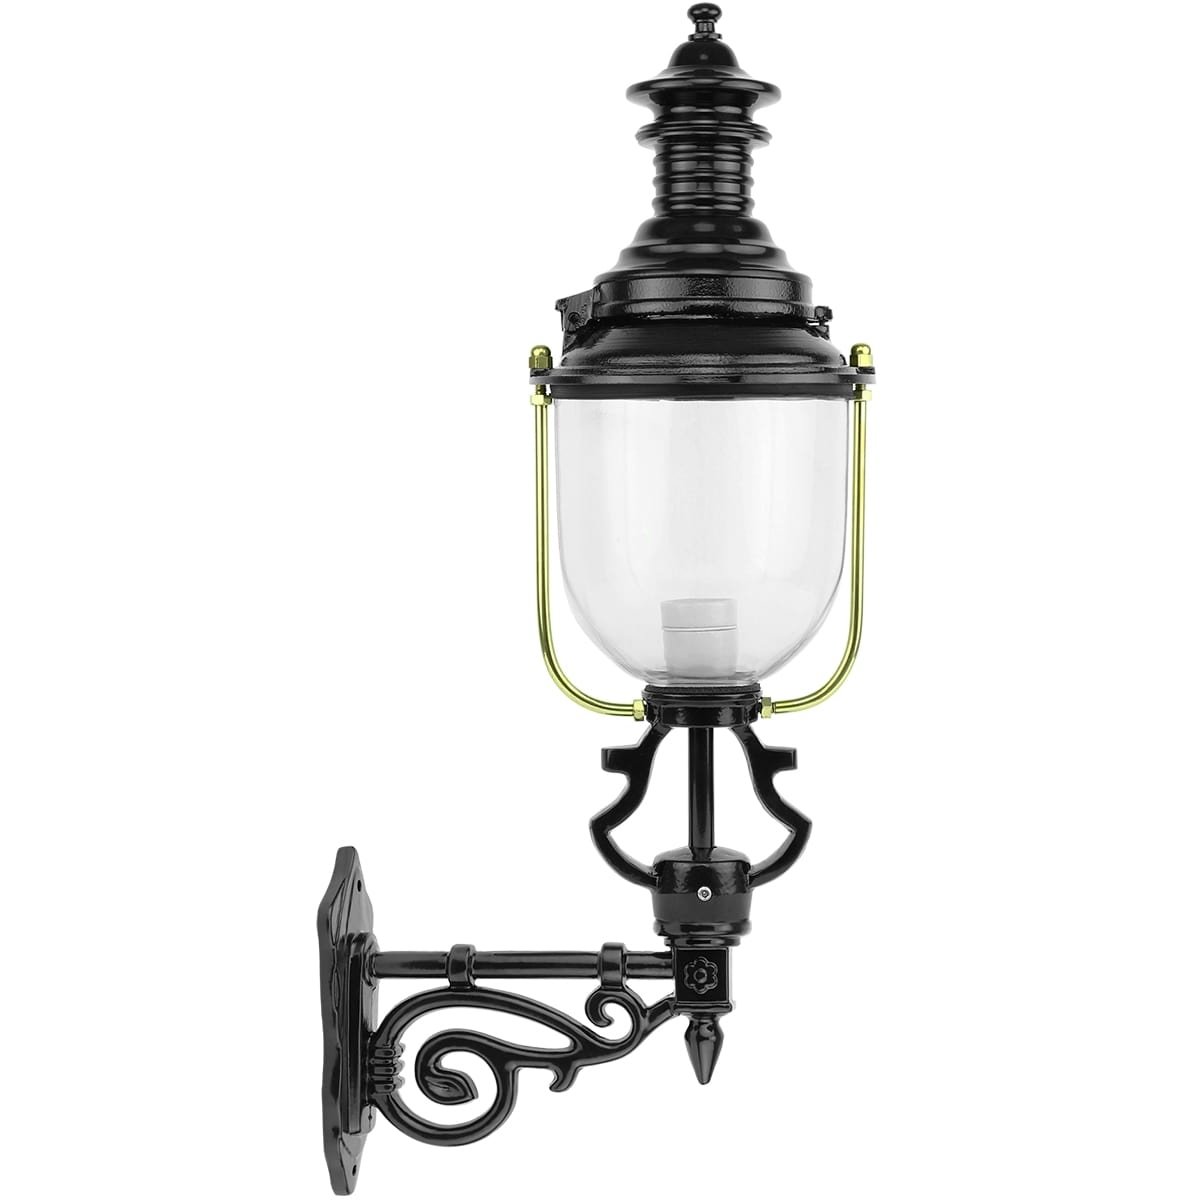 Facade lantern round Absdale - 74 cm